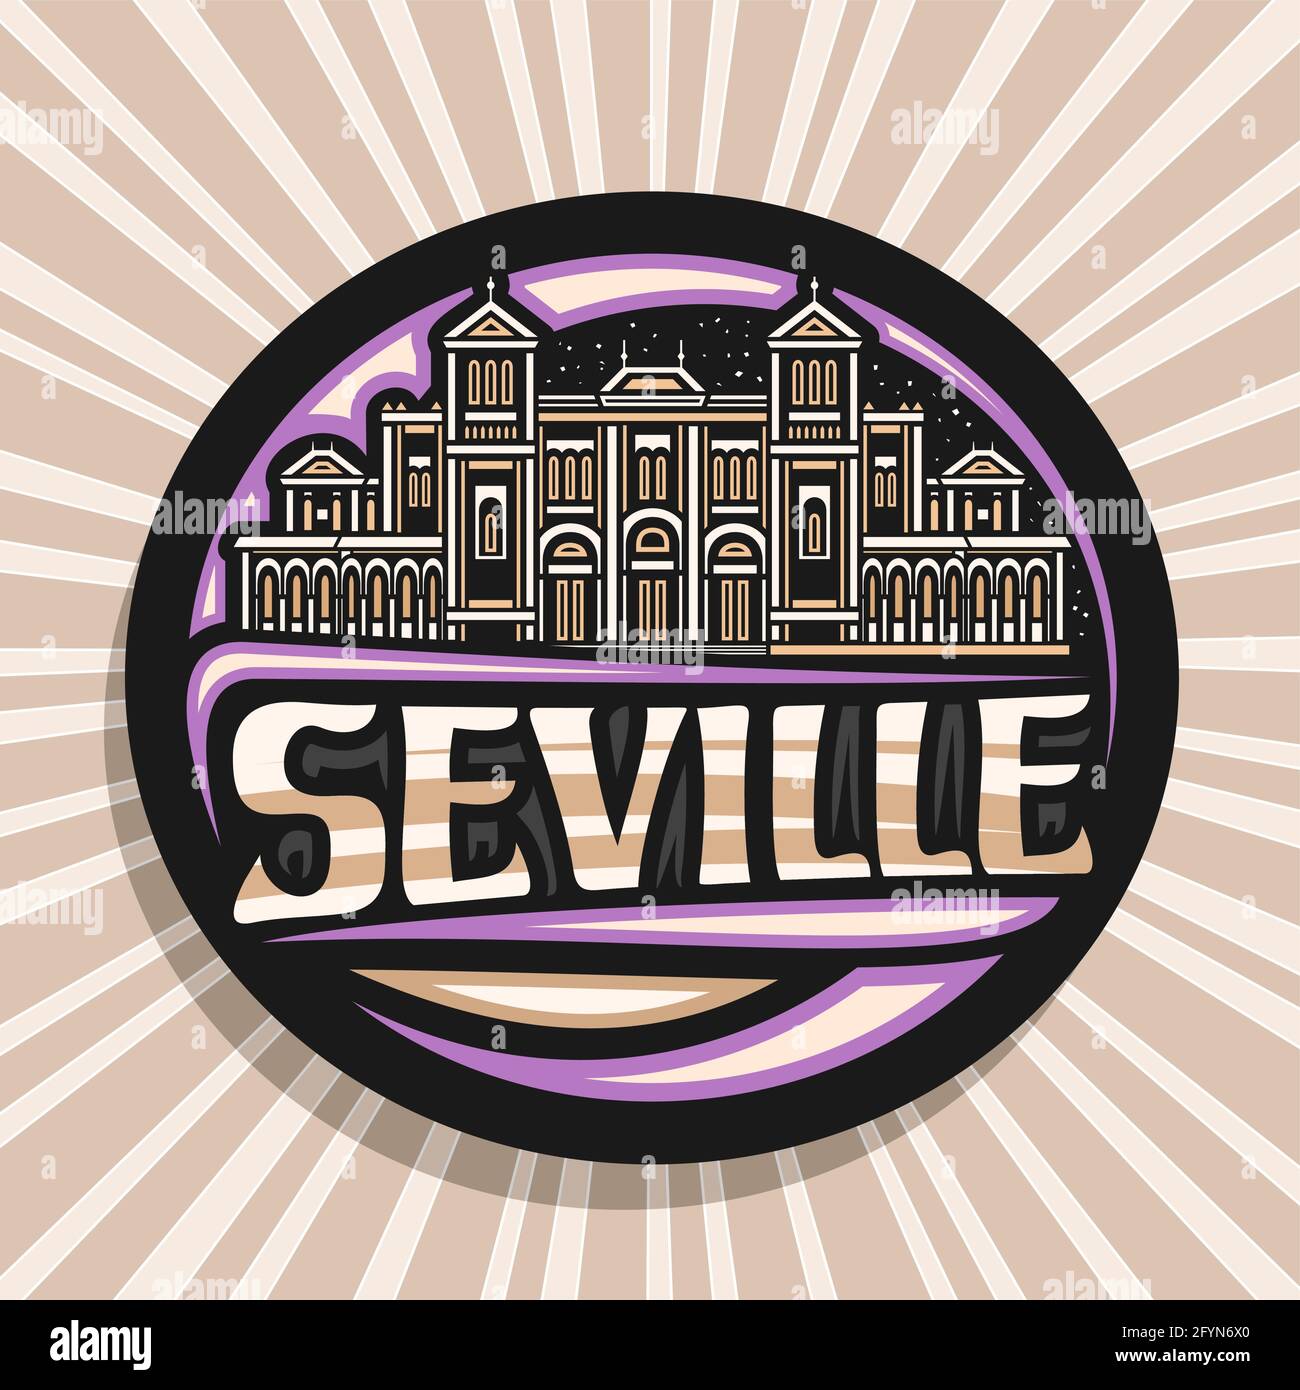 Logo vettoriale per Siviglia, badge decorativo nero con illustrazione della città europea di siviglia su sfondo cielo crepuscolo, magnete per frigorifero di design artistico Illustrazione Vettoriale